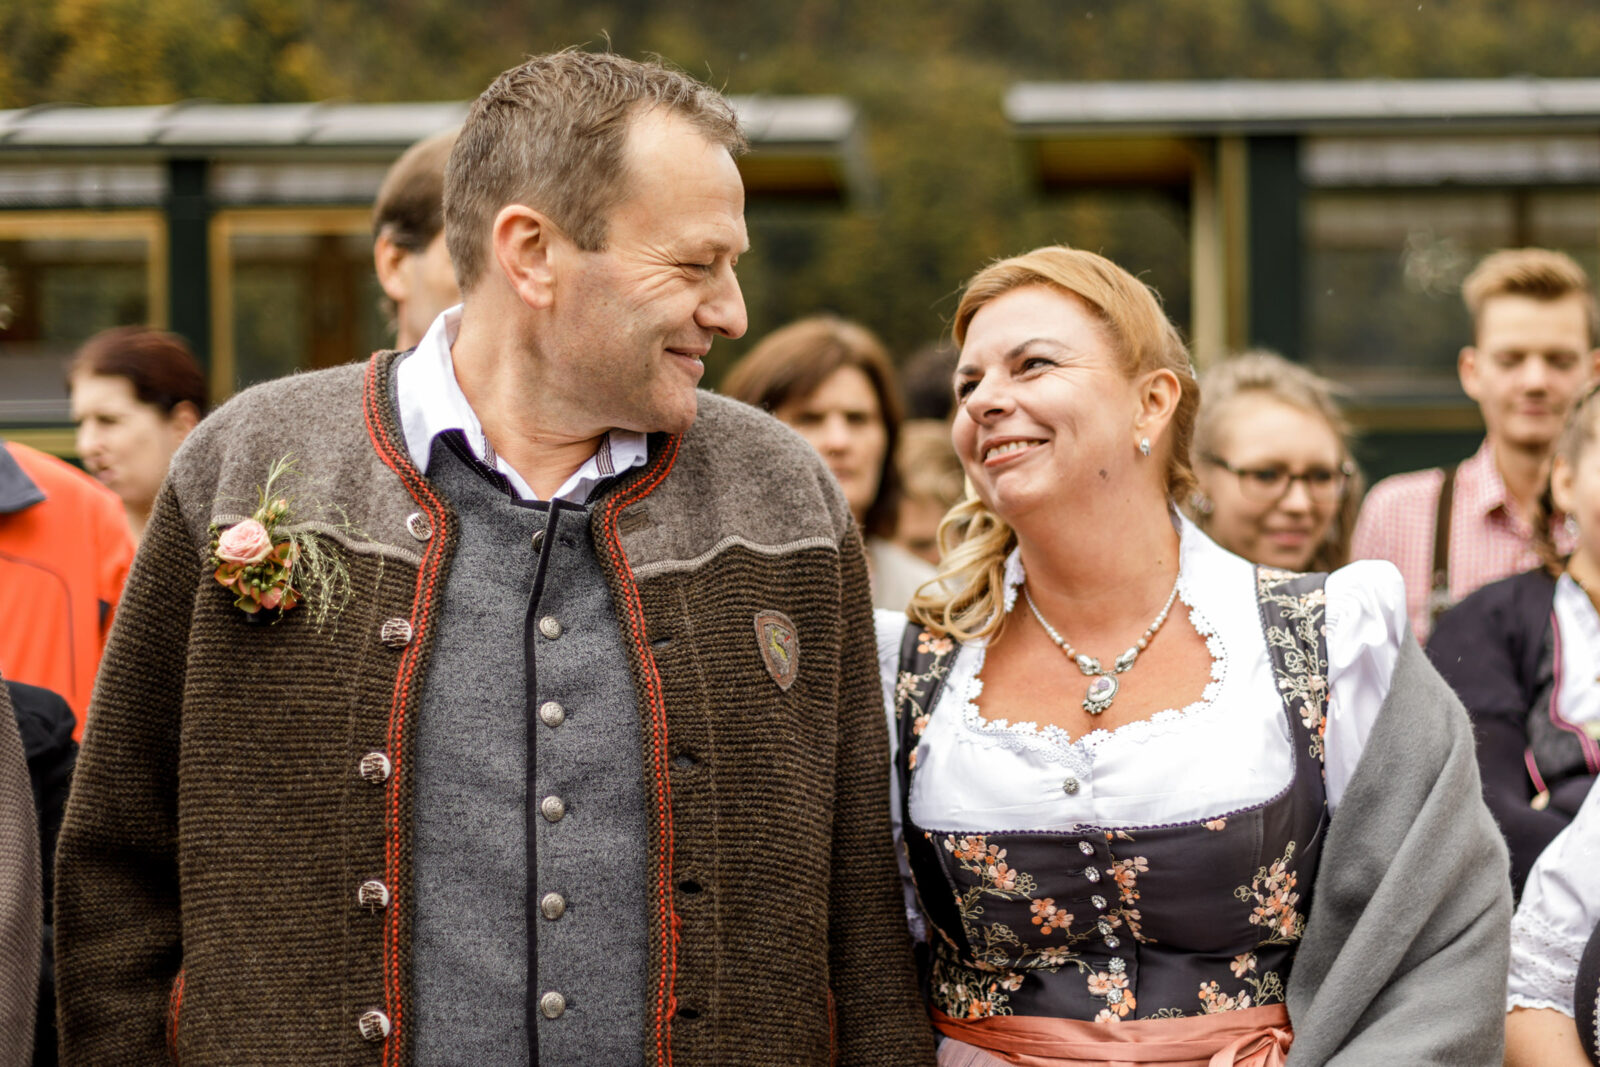 historical wedding location in bregenzerwald